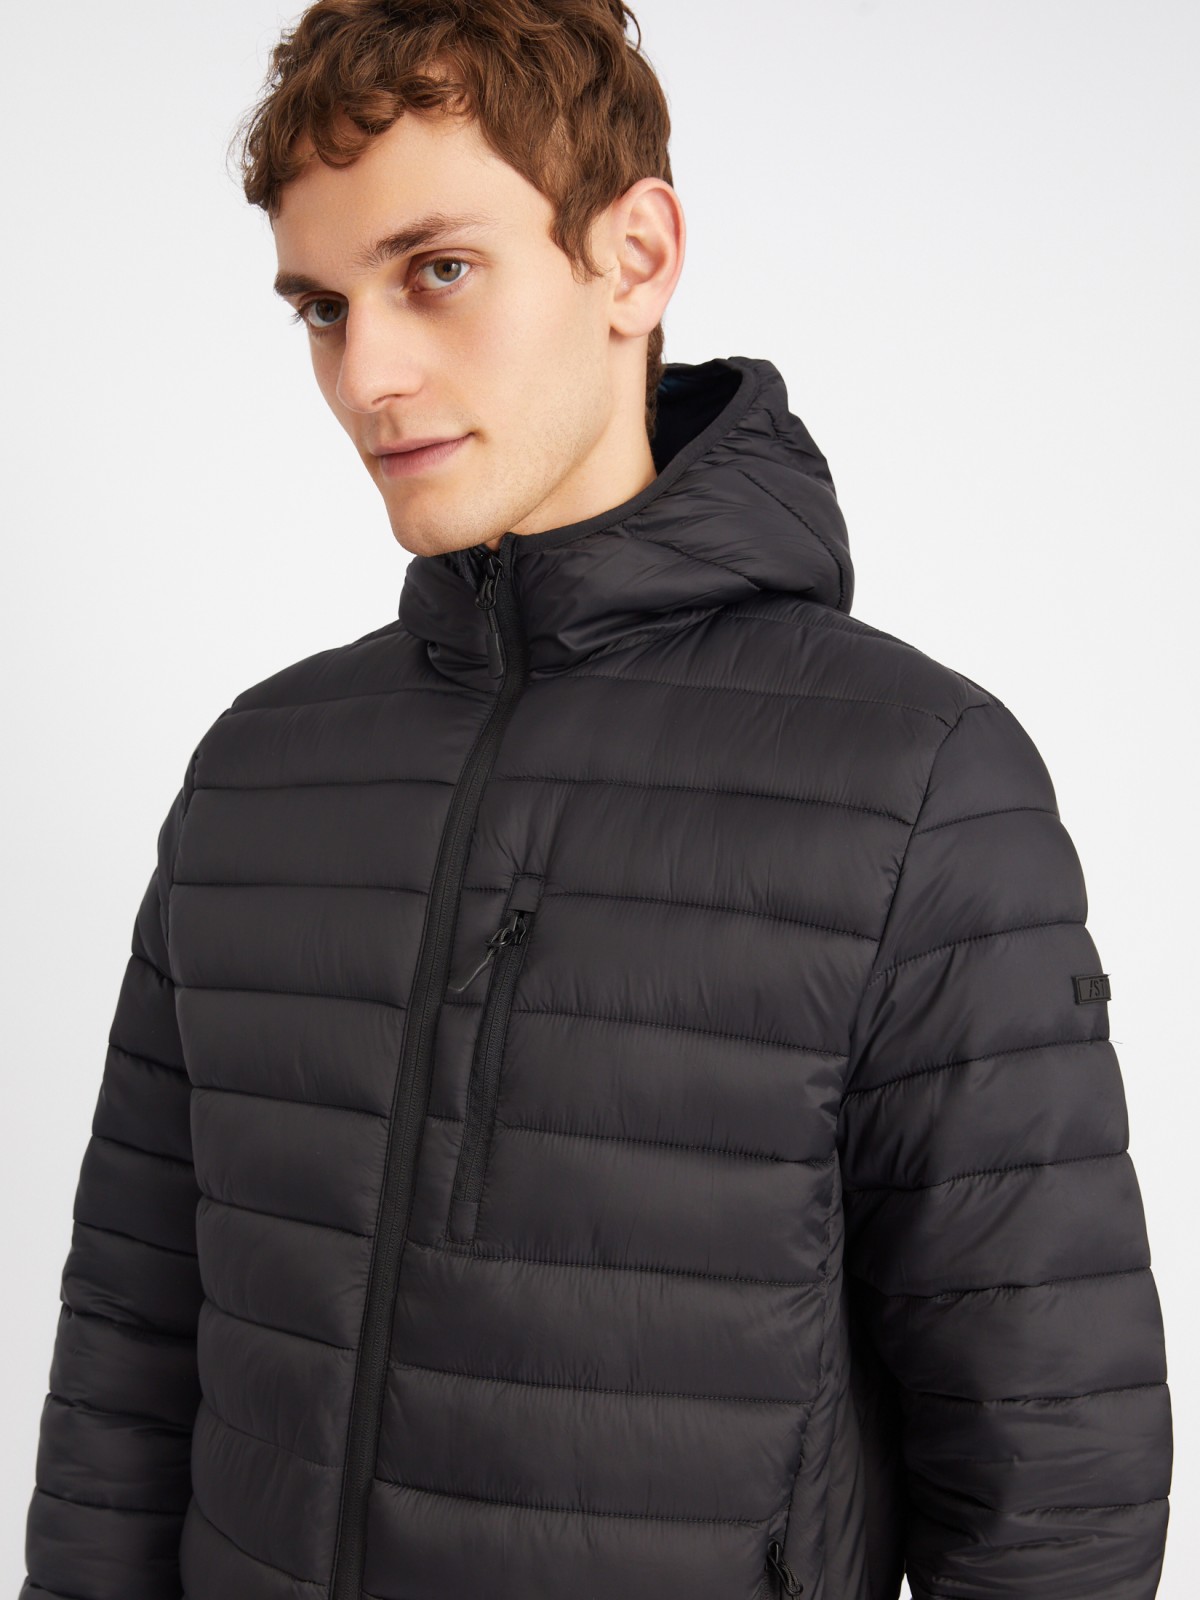 Лёгкая утеплённая стёганая куртка на молнии с капюшоном zolla 013335114014, цвет черный, размер S - фото 5